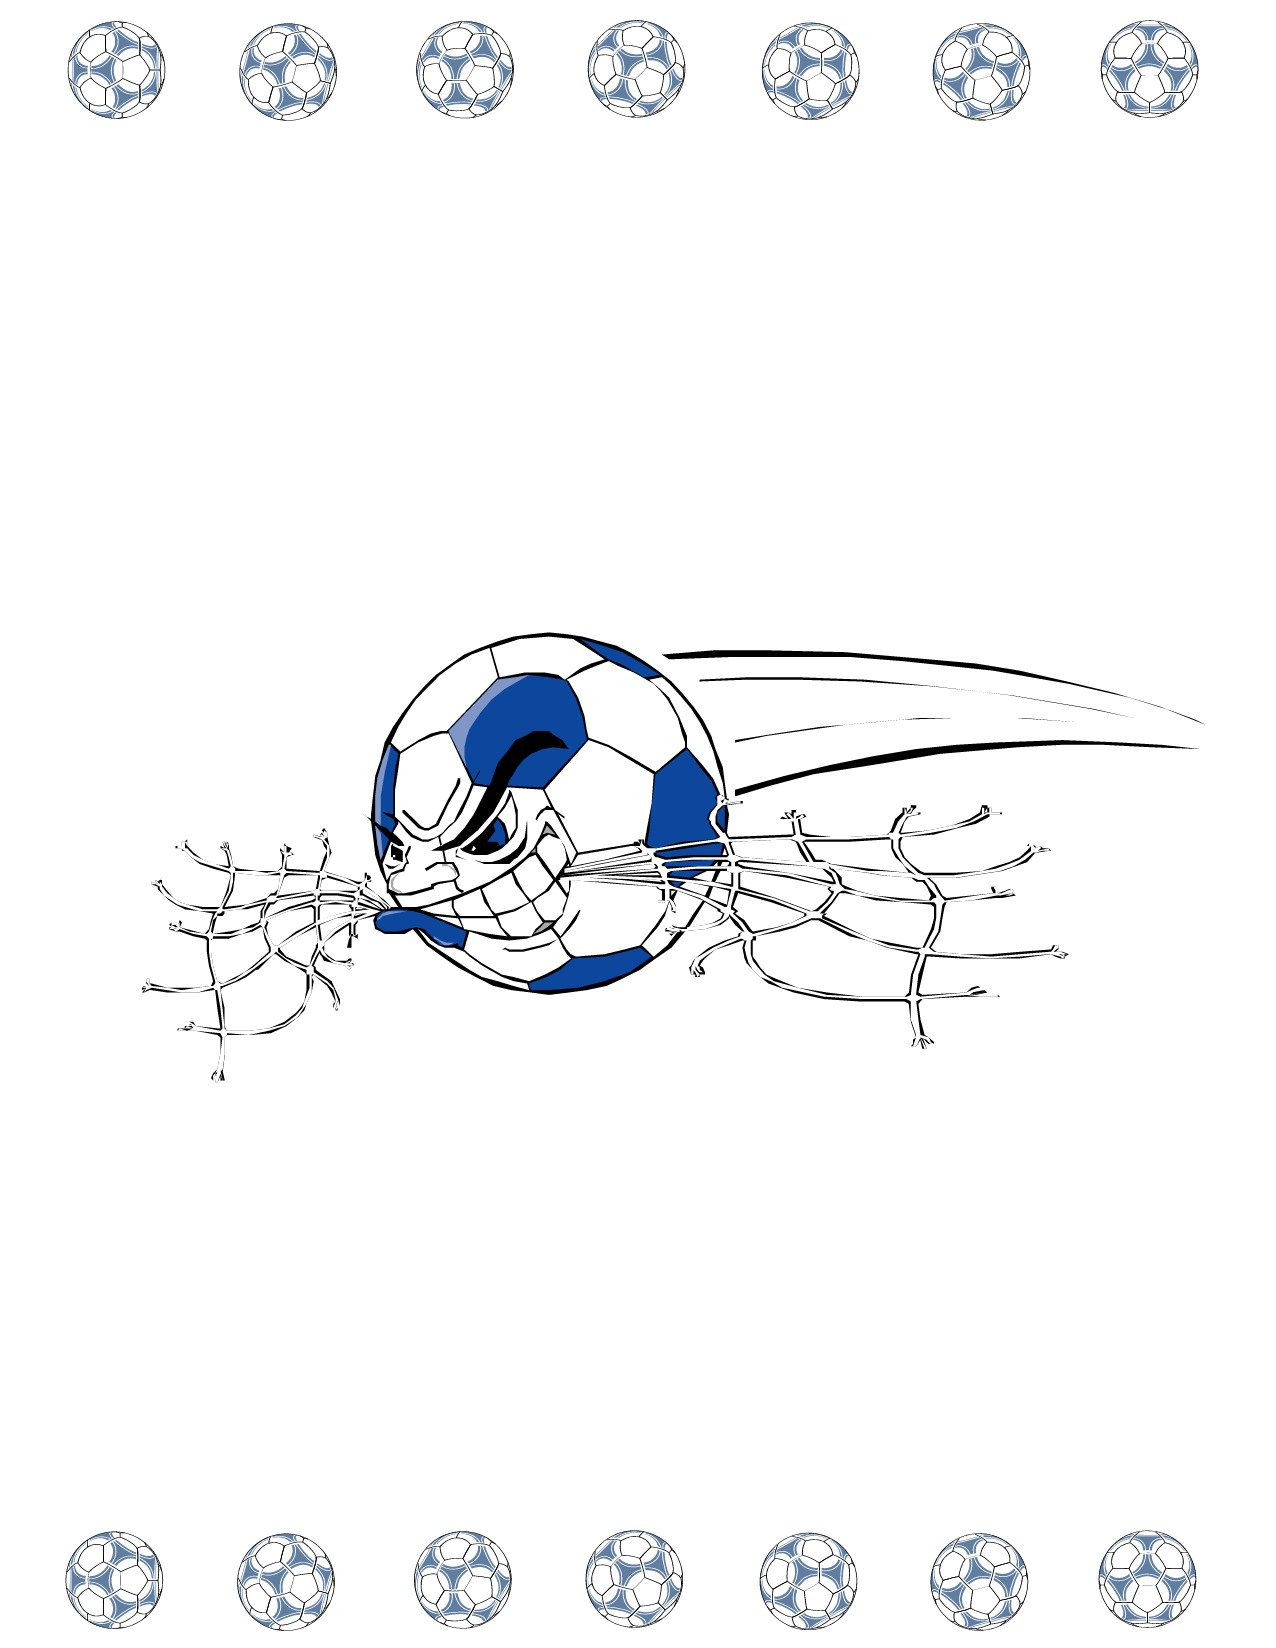 Soccer Award Certificate Maker: Make Personalized Soccer Awards In Soccer Award Certificate Template